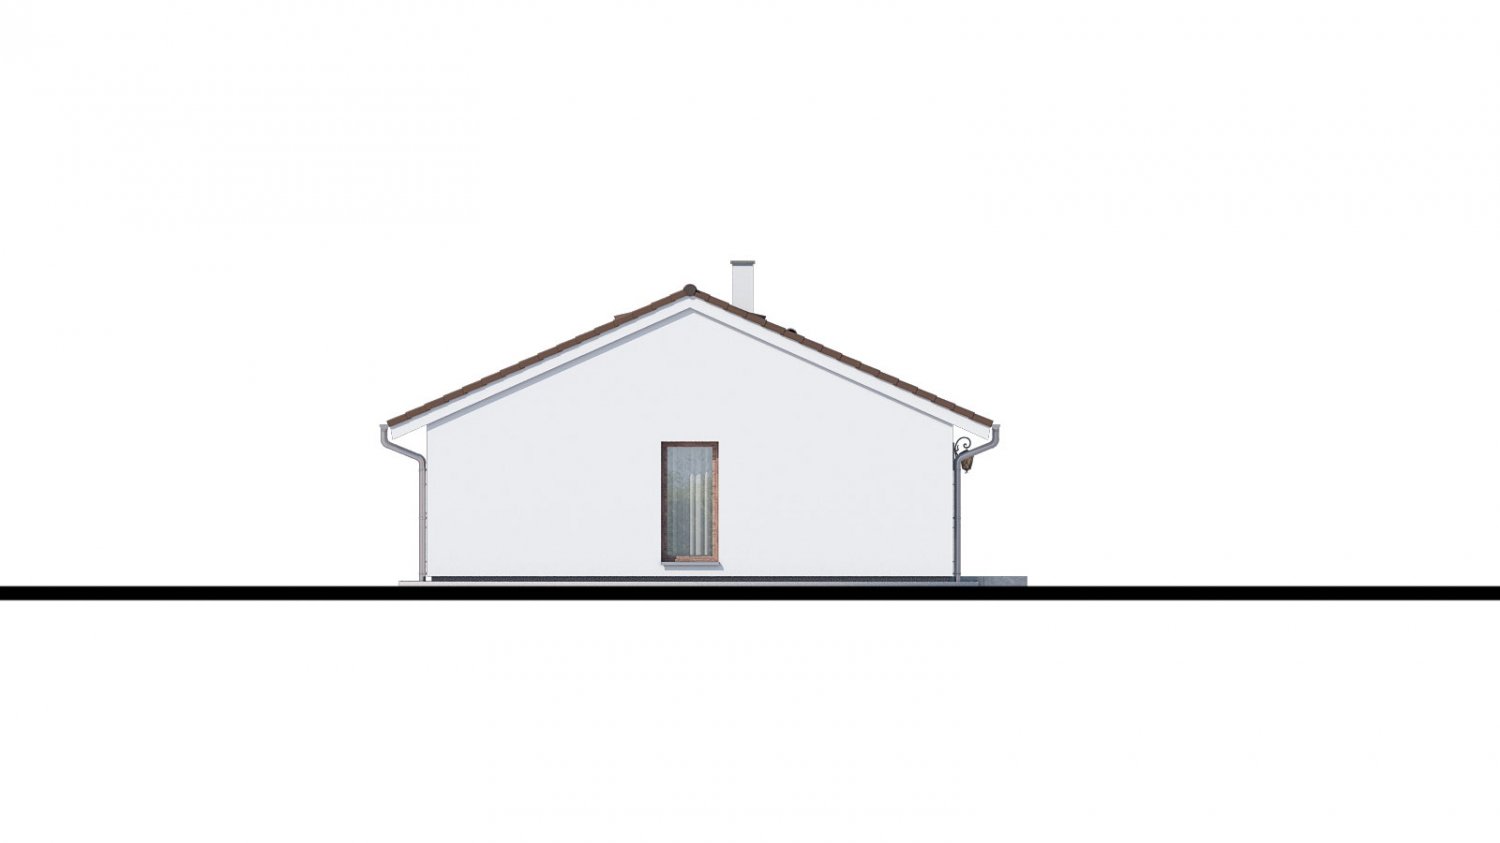 Pohľad 4. - Top projekt 2019 rodinného domu se sedlovou střechou. Zpracovaný ve virtuální realitě se zařizováním.